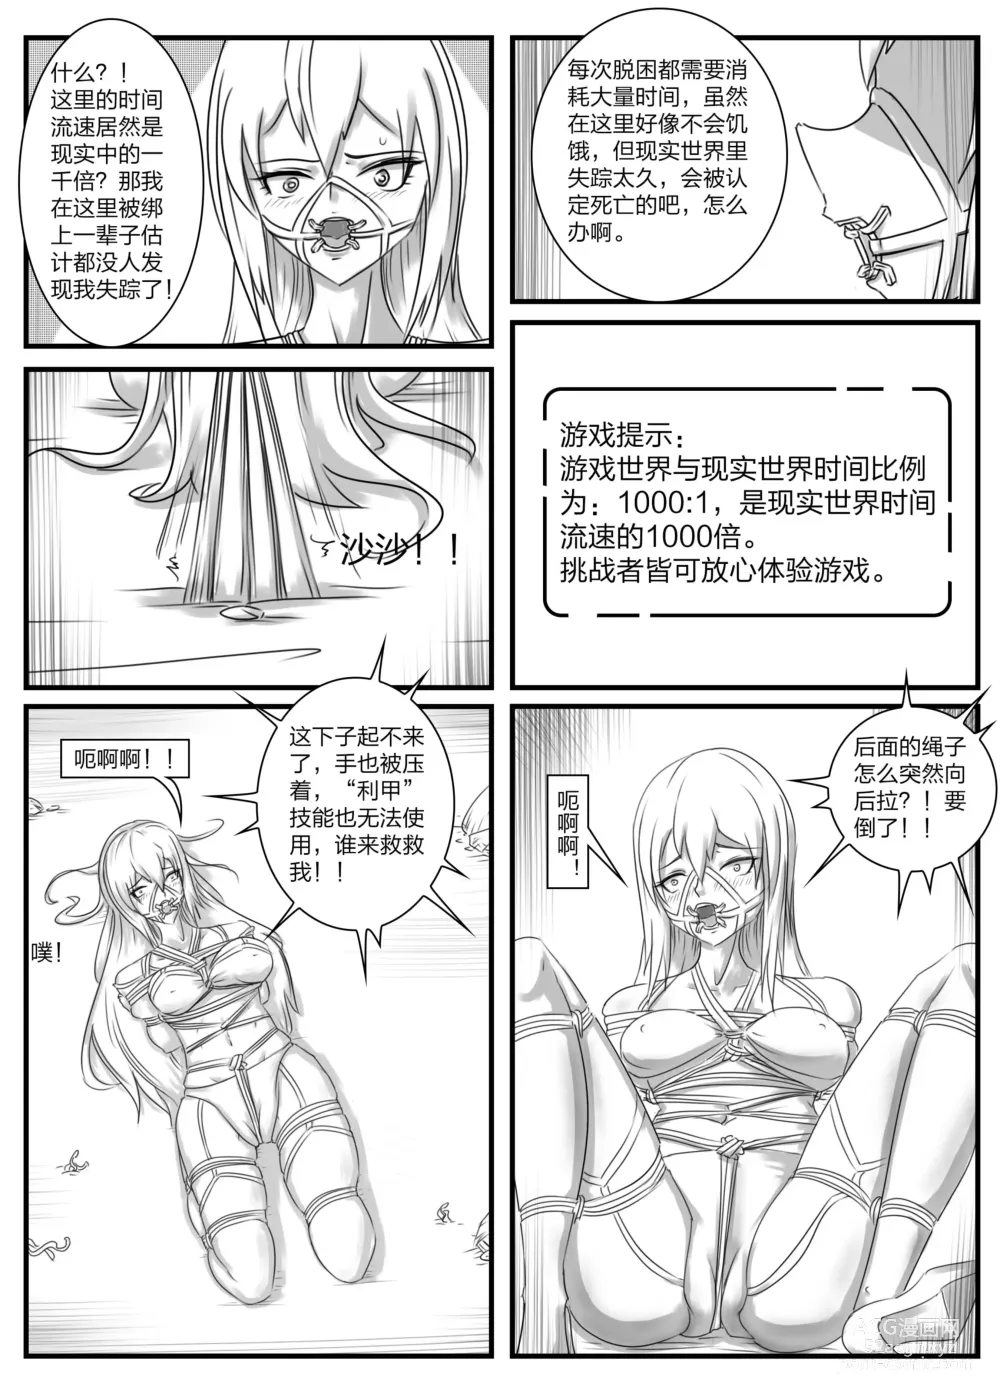 Page 12 of doujinshi 《被困游戏世界2》